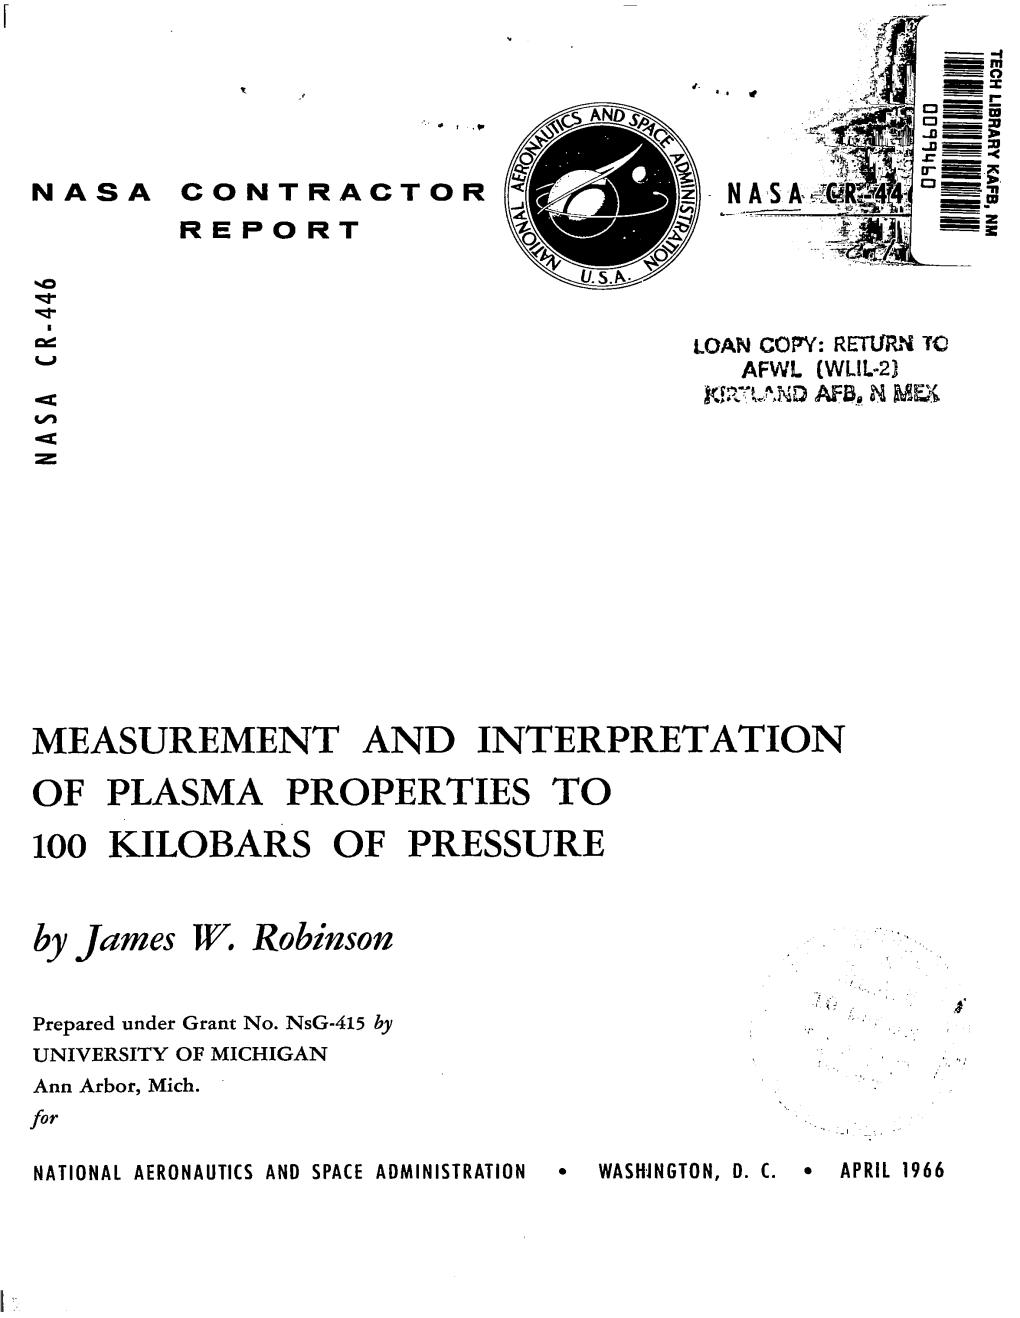 Measurement and Interpretation of Plasmaproperties to 100 Kilobars of Pressure